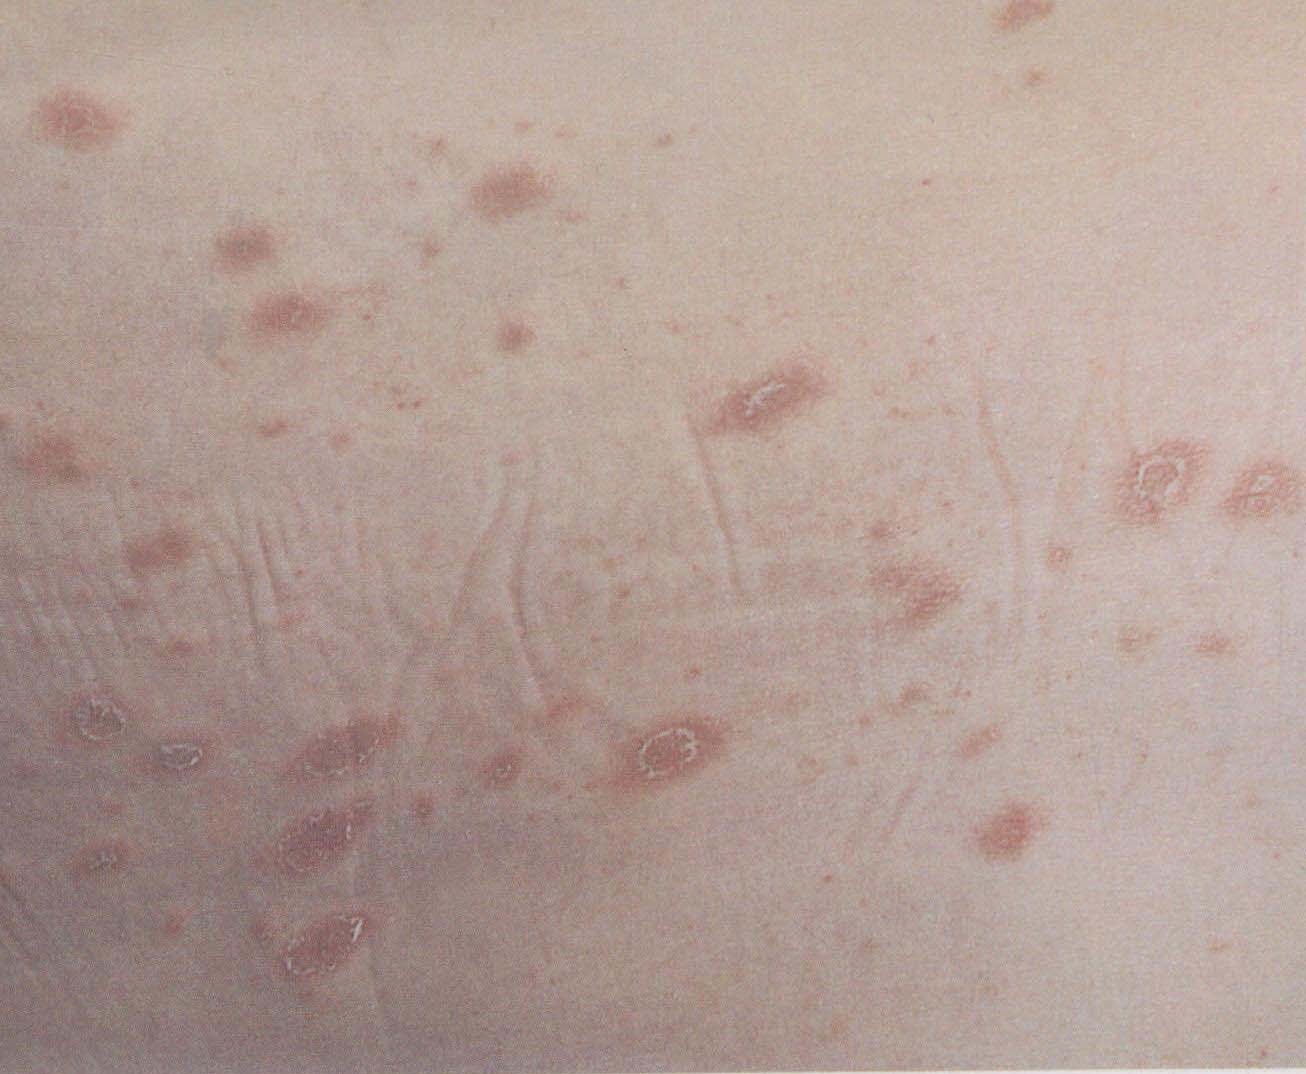 梅毒初期皮肤,红斑丘疹性湿疹图片 - 伤感说说吧